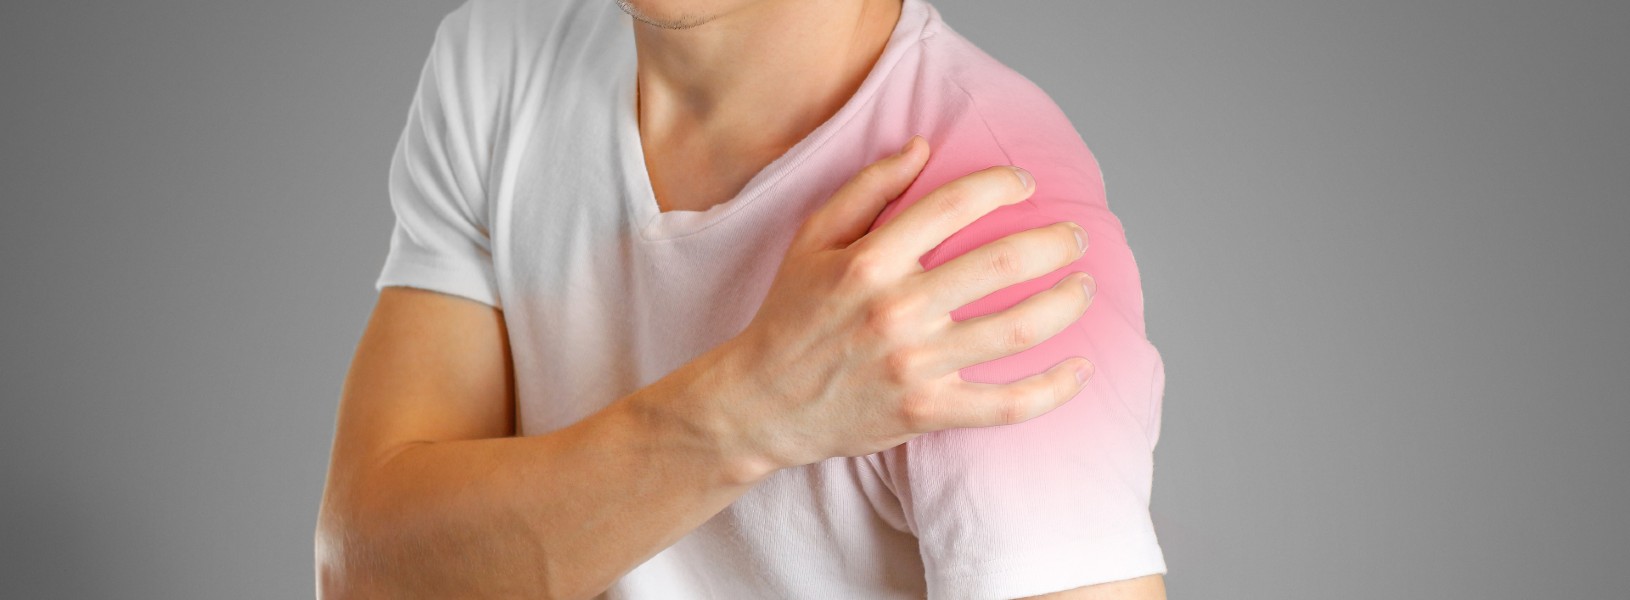 durere severă în articulația umărului brațului drept